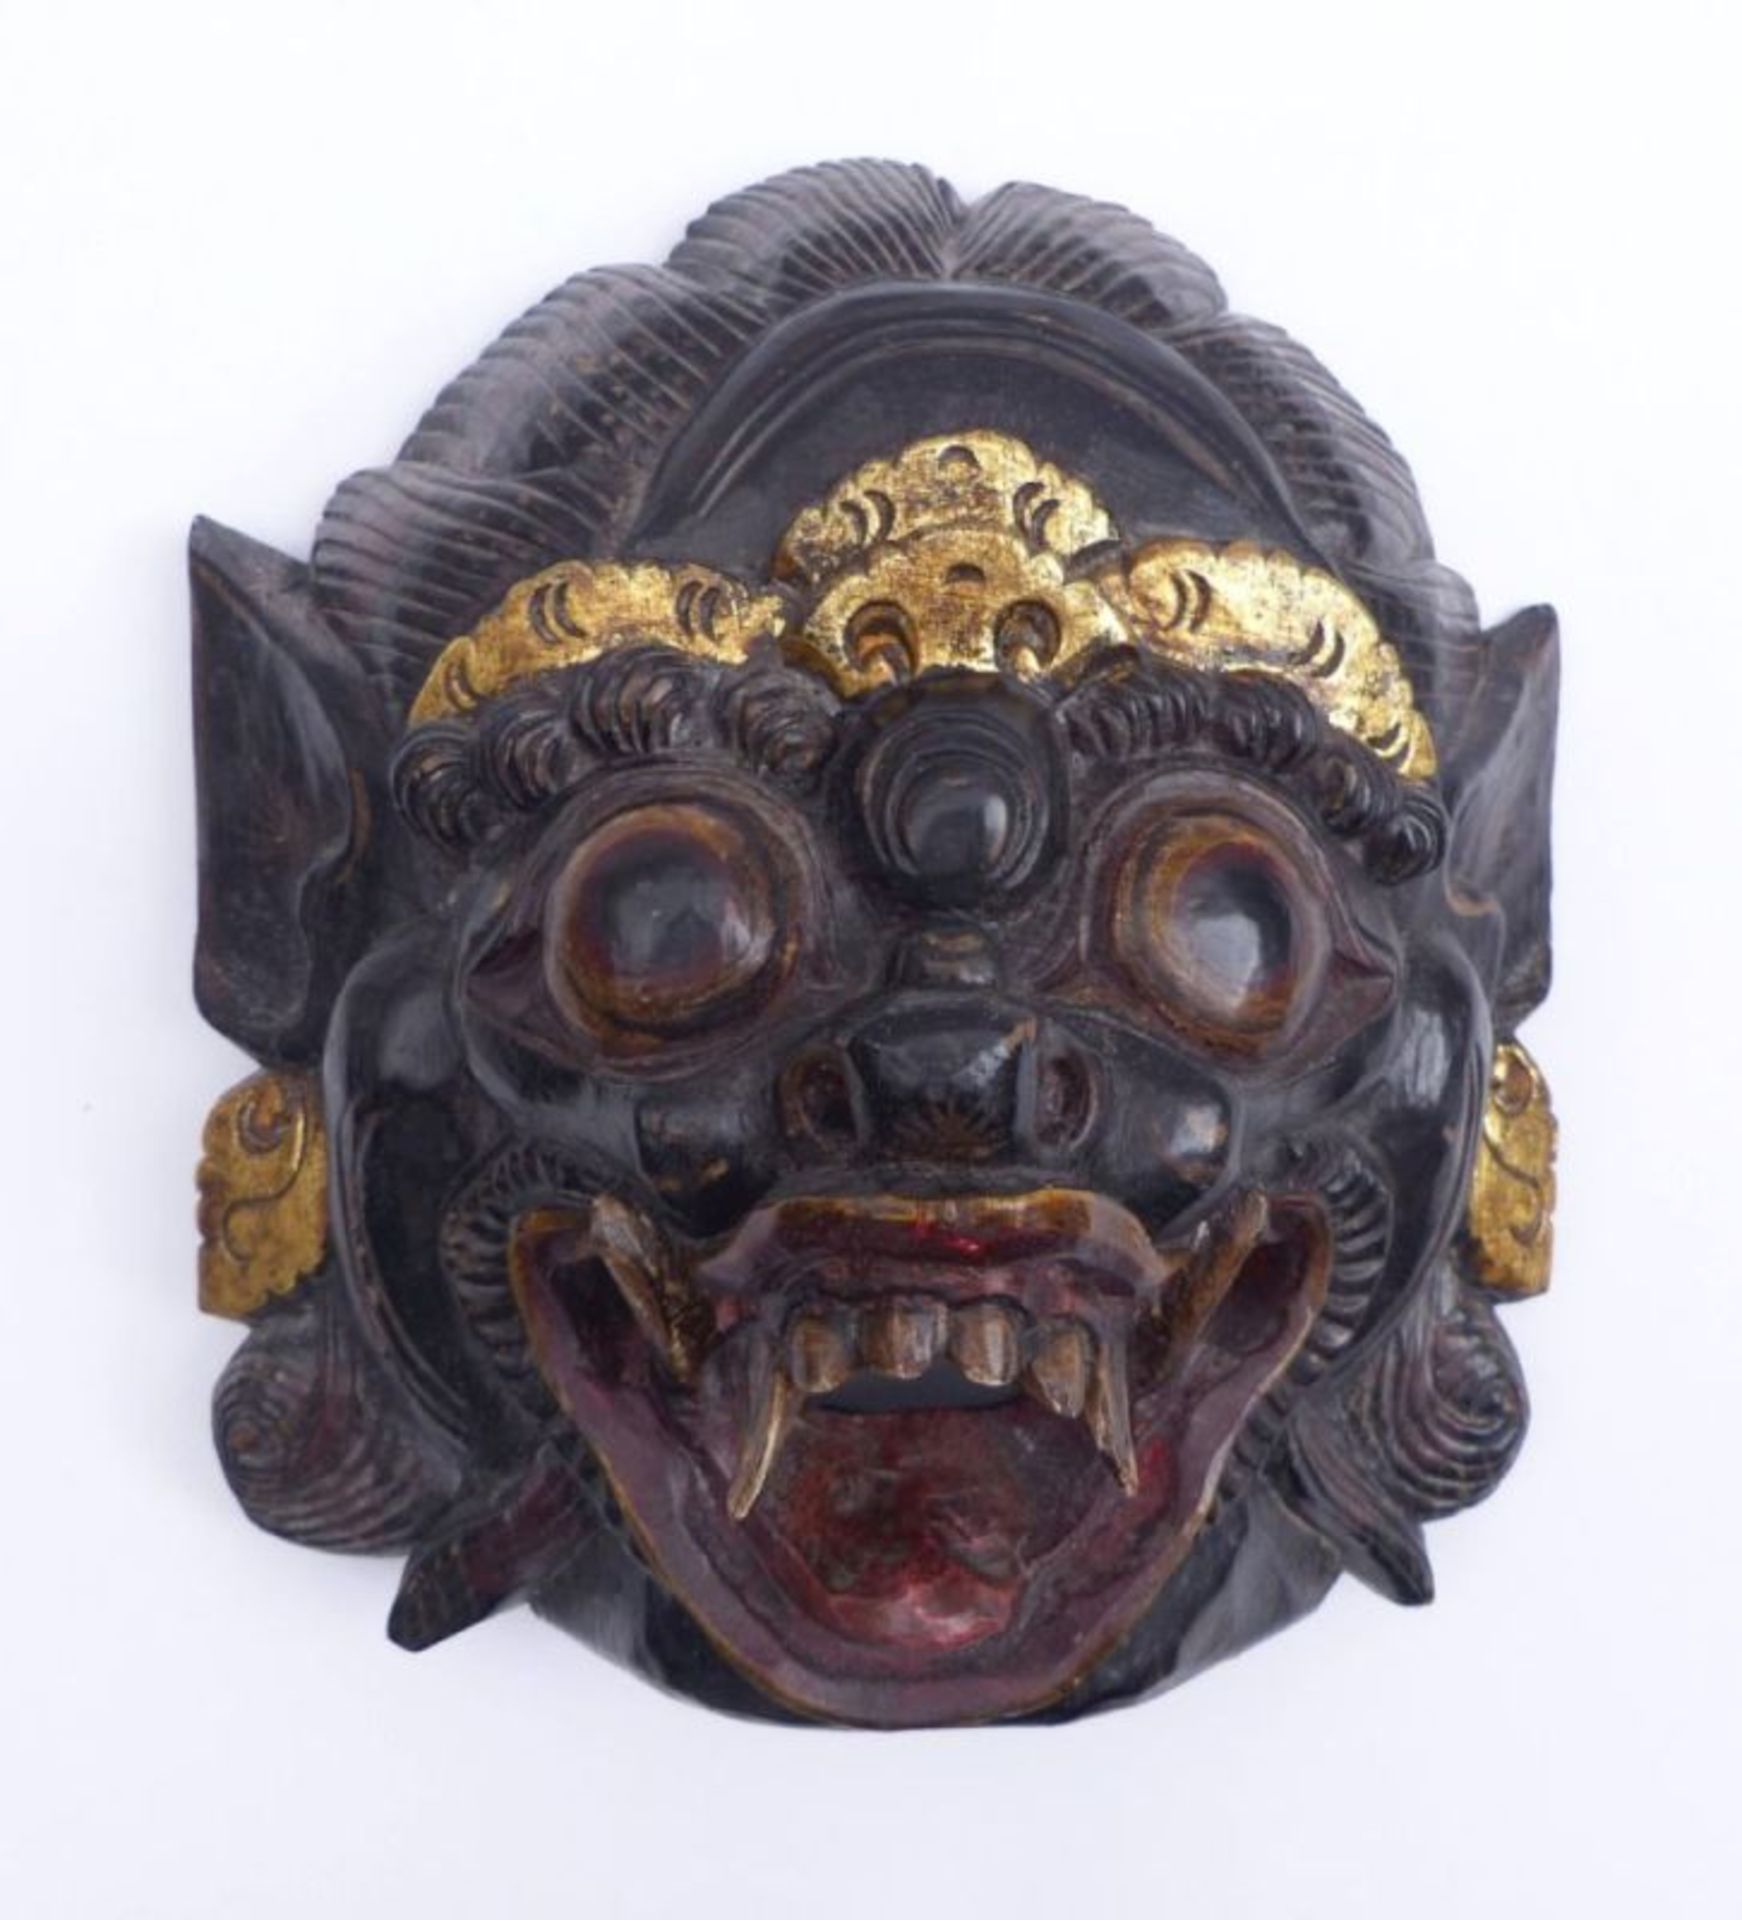 Maske des BarongIndonesienDämonenartiges Gesicht mit Fangzähnen, spitzen Ohren und stilisierter